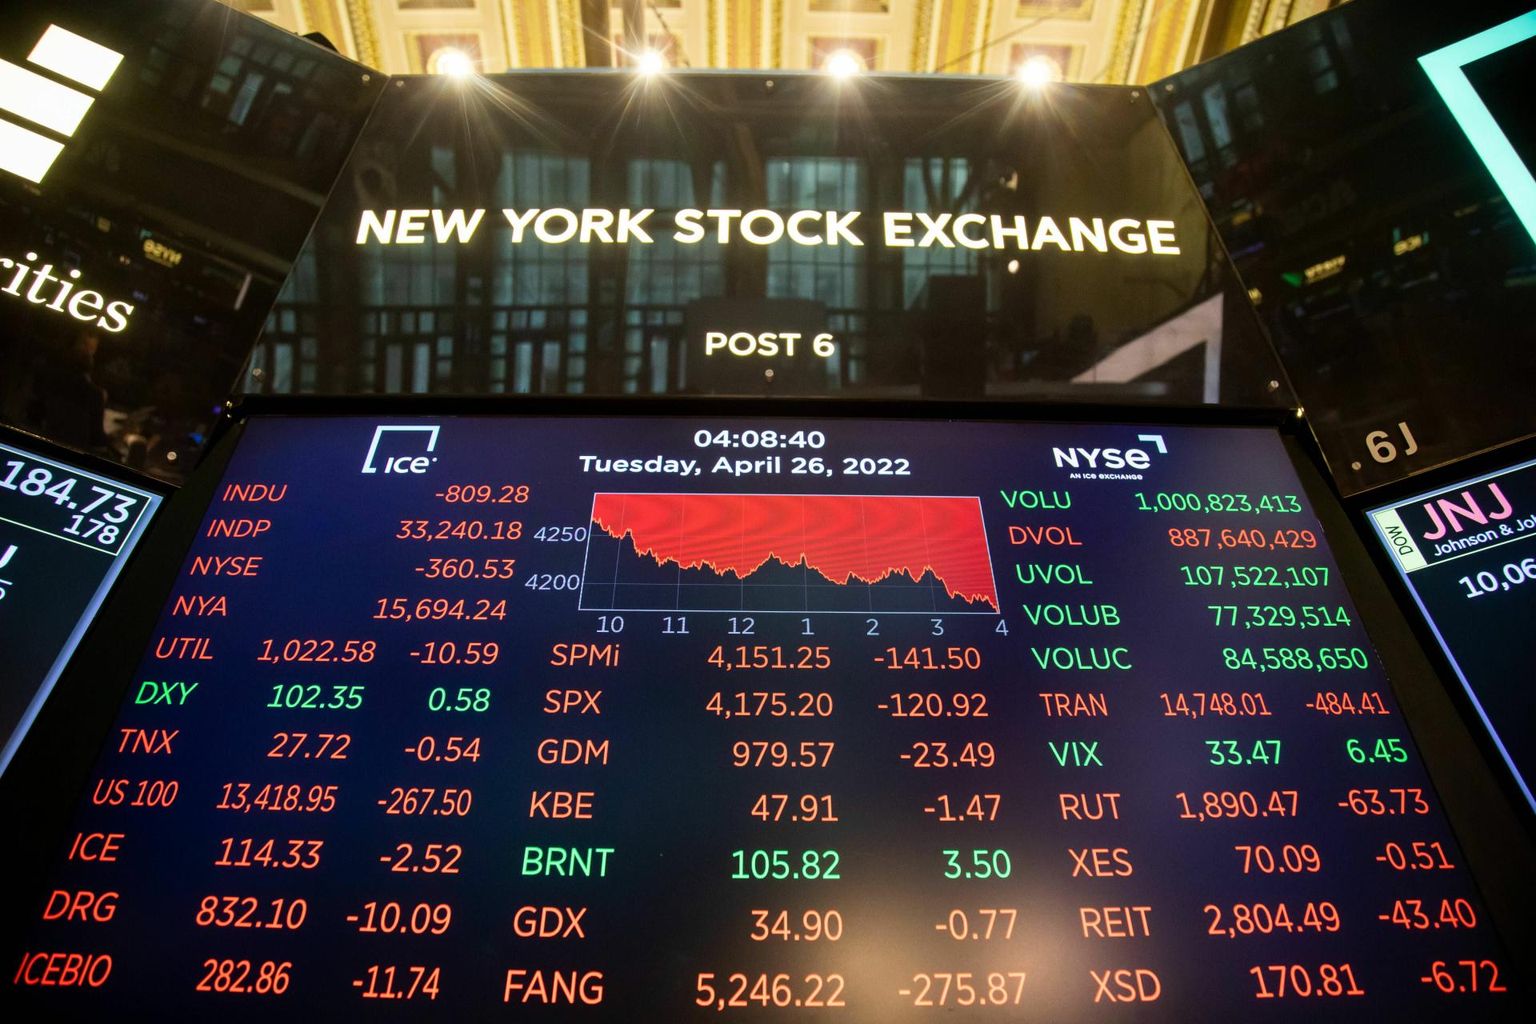 Tabloo New Yorgi börsil 27. aprillil, mis oli tehnoloogiaaktsiate jaoks üks viimaste aastate kehvemaid päevi. 